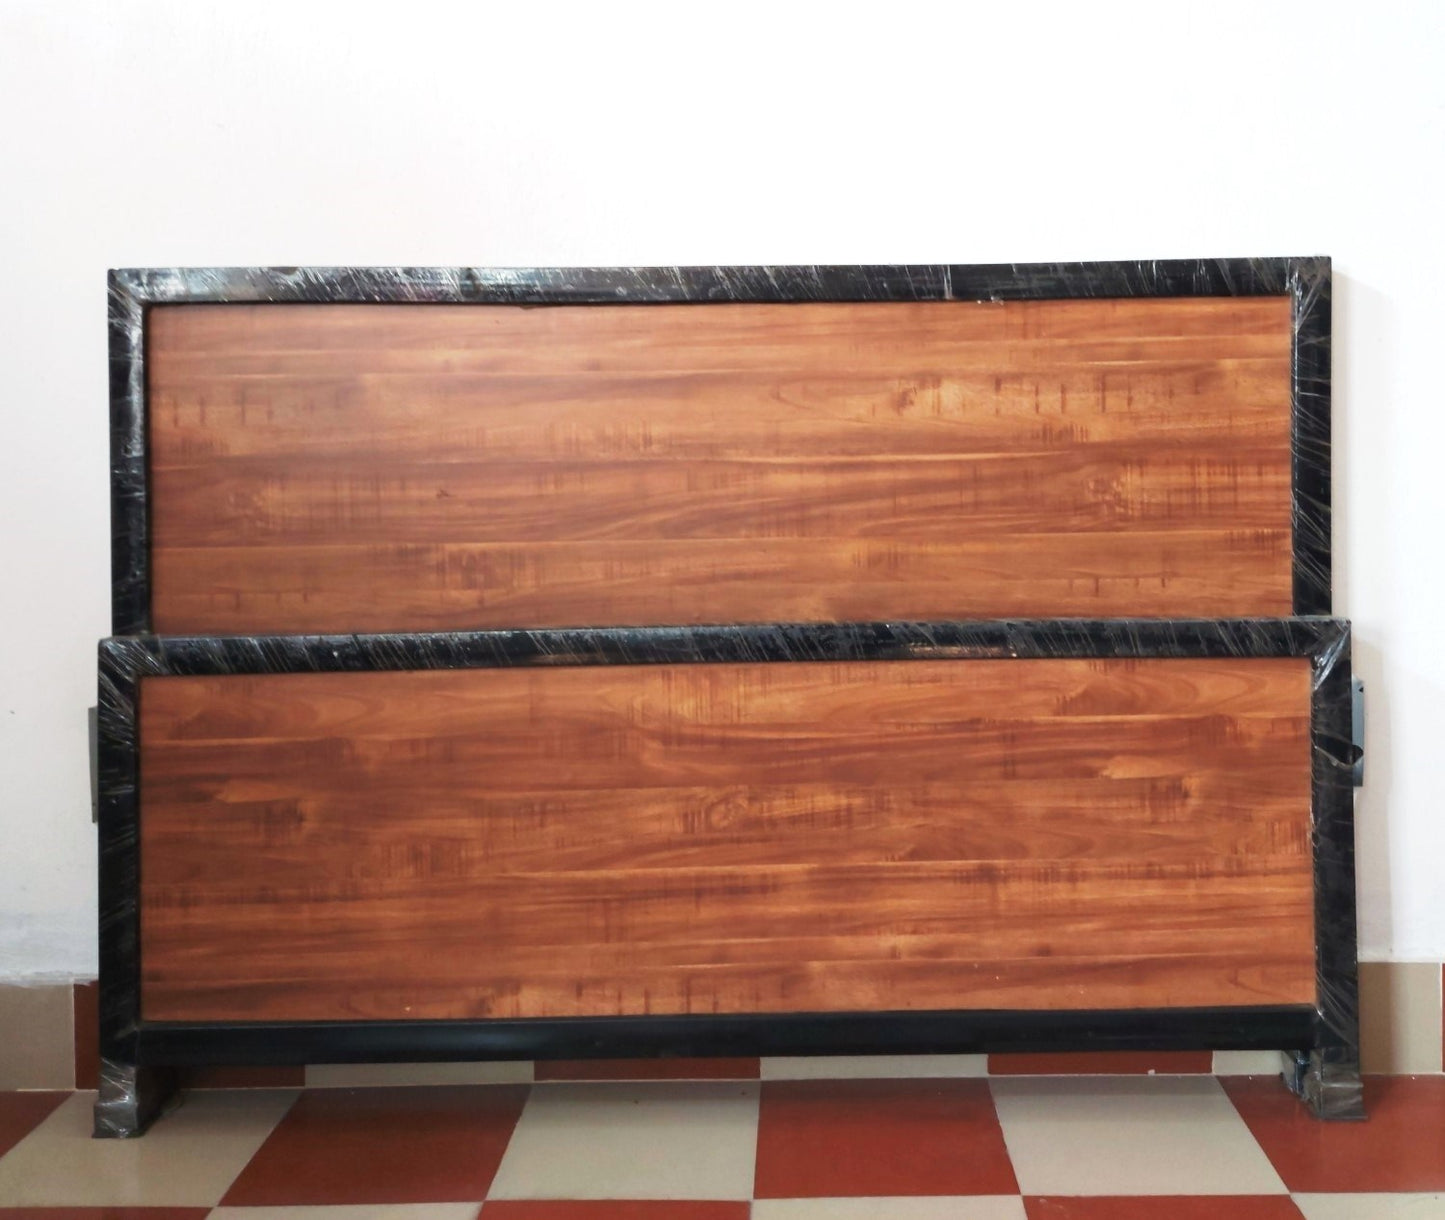 Bowzar Wooden Design Queen Size 5X6.5 Feet Bed